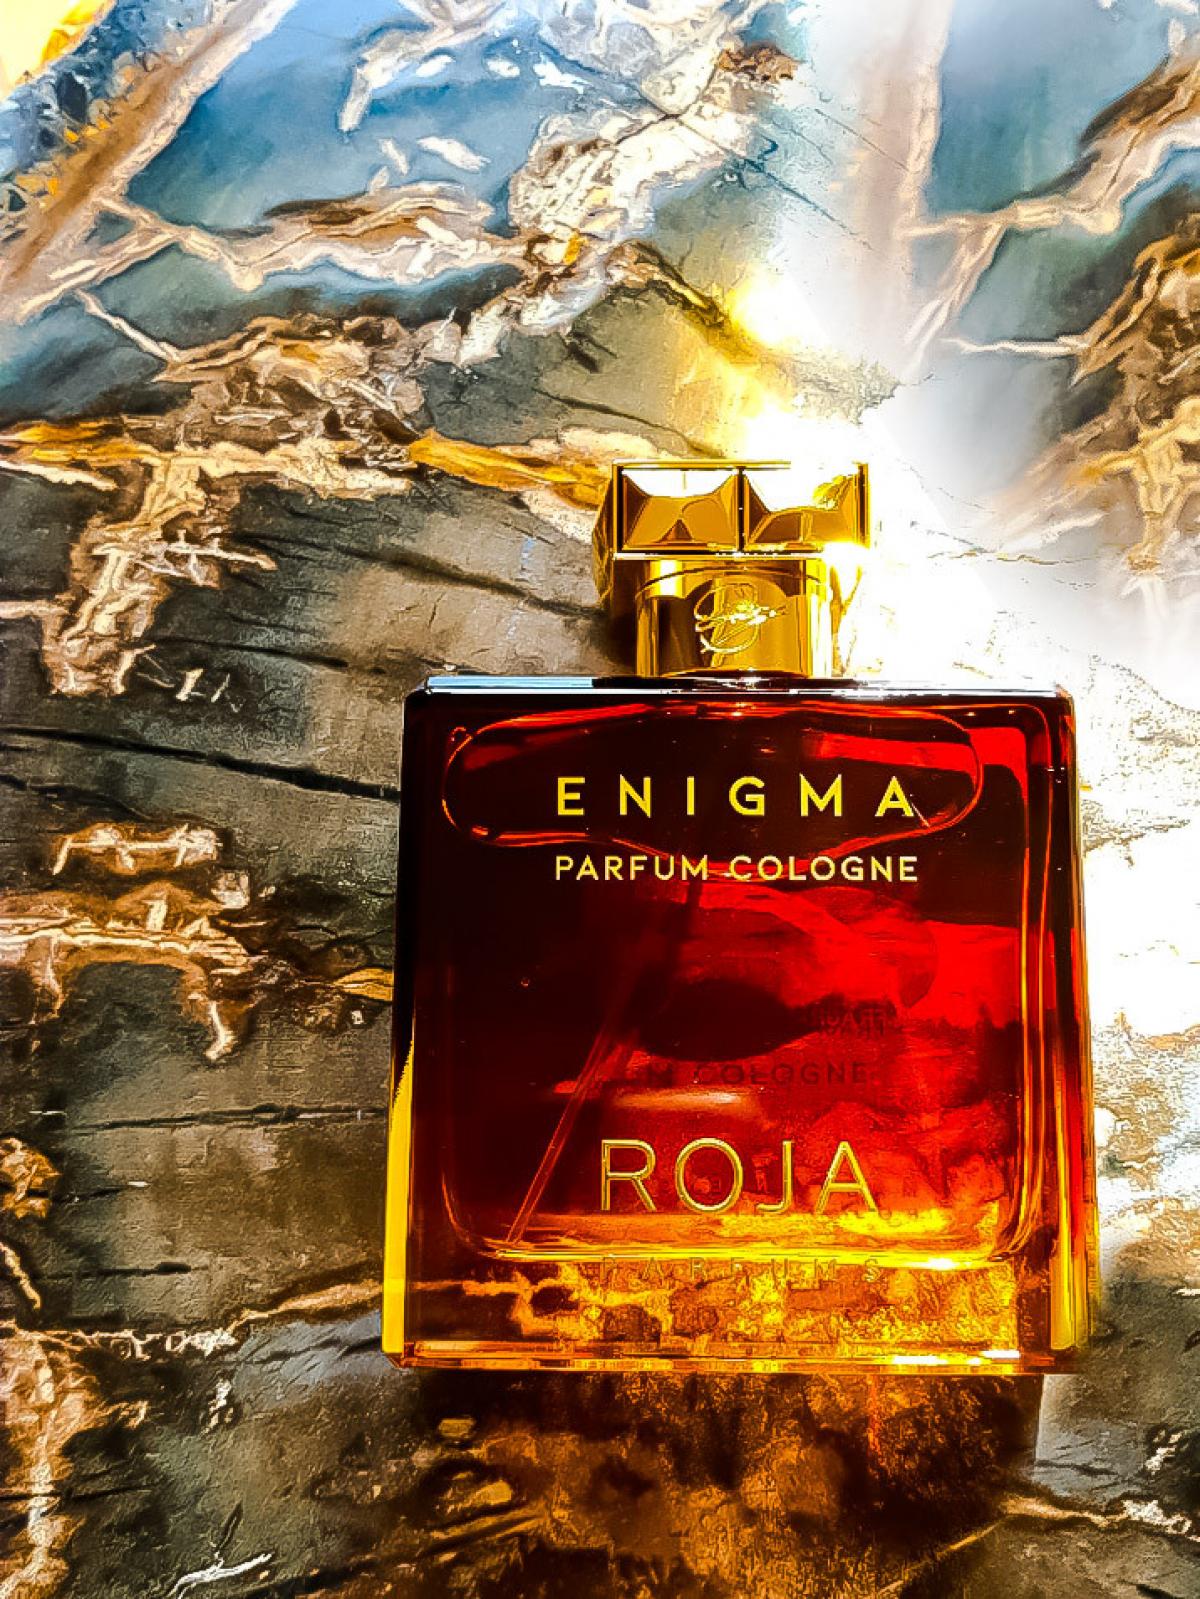 Enigma pour homme. Roja dove Enigma pour homme Parfum Cologne. Roja dove Enigma духи. Enigma Parfum Cologne. Enigma pour Roja.